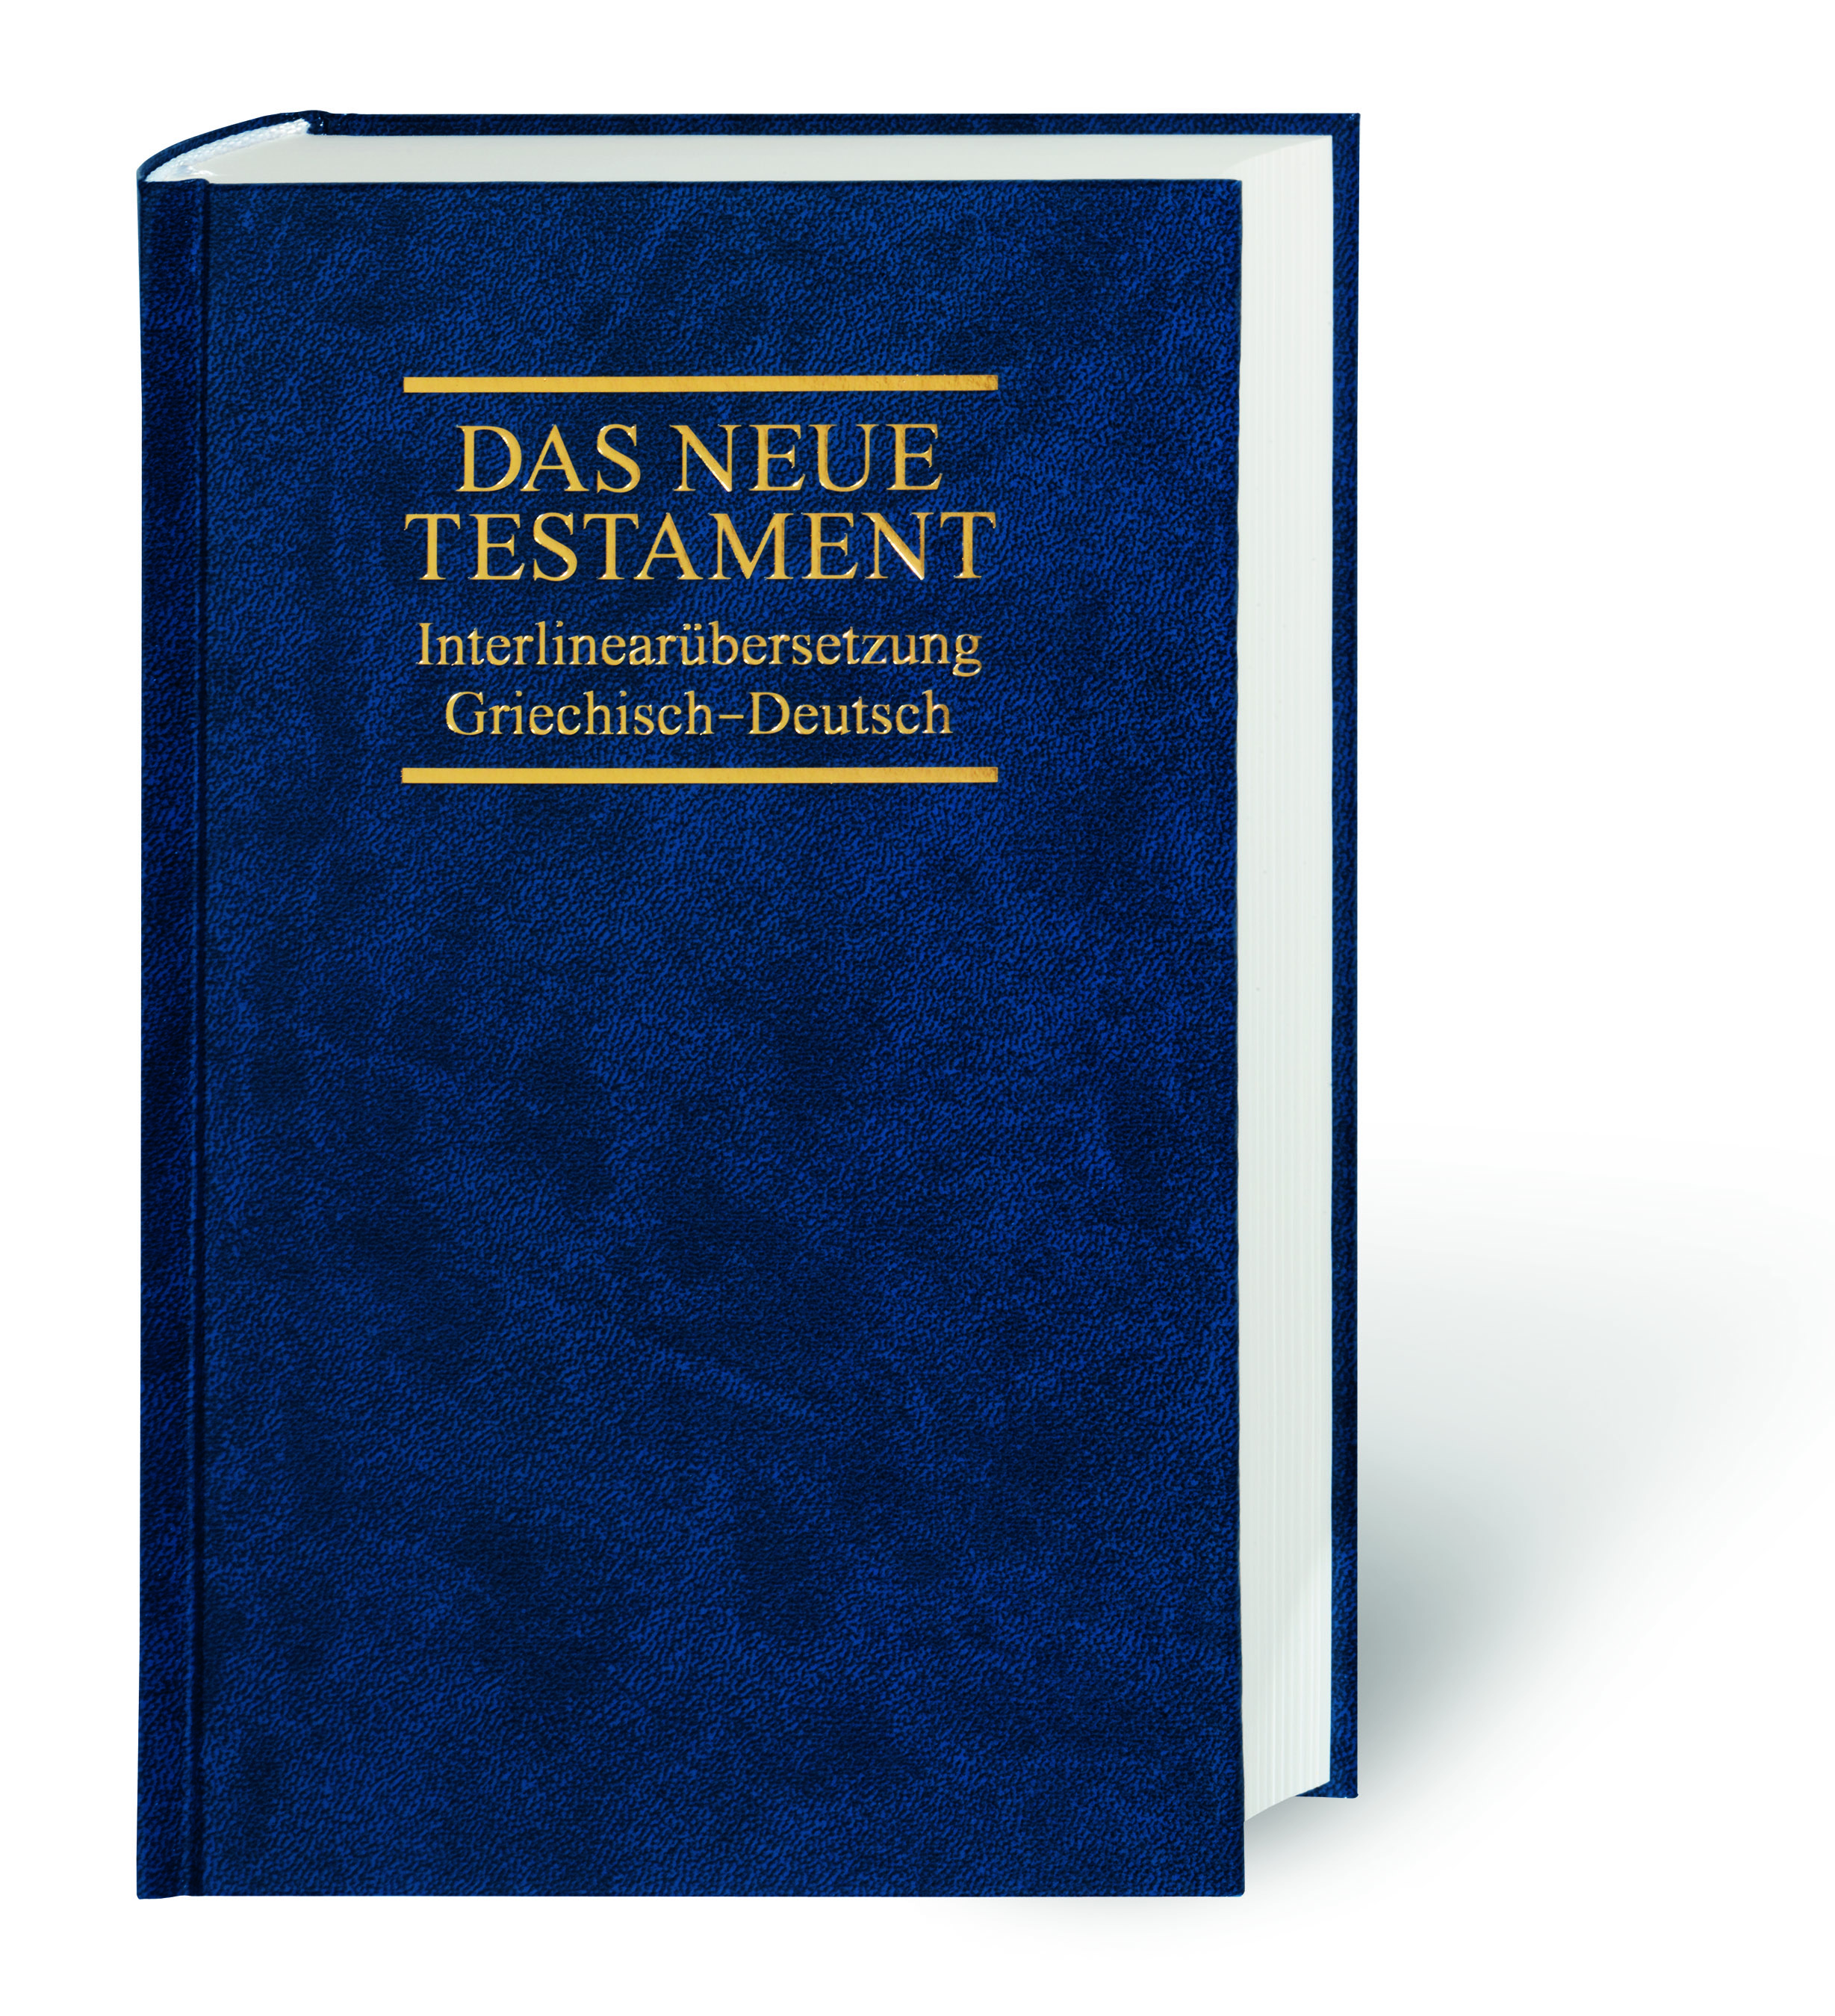 Das Neue Testament. Interlinear. Griechisch-Deutsch.